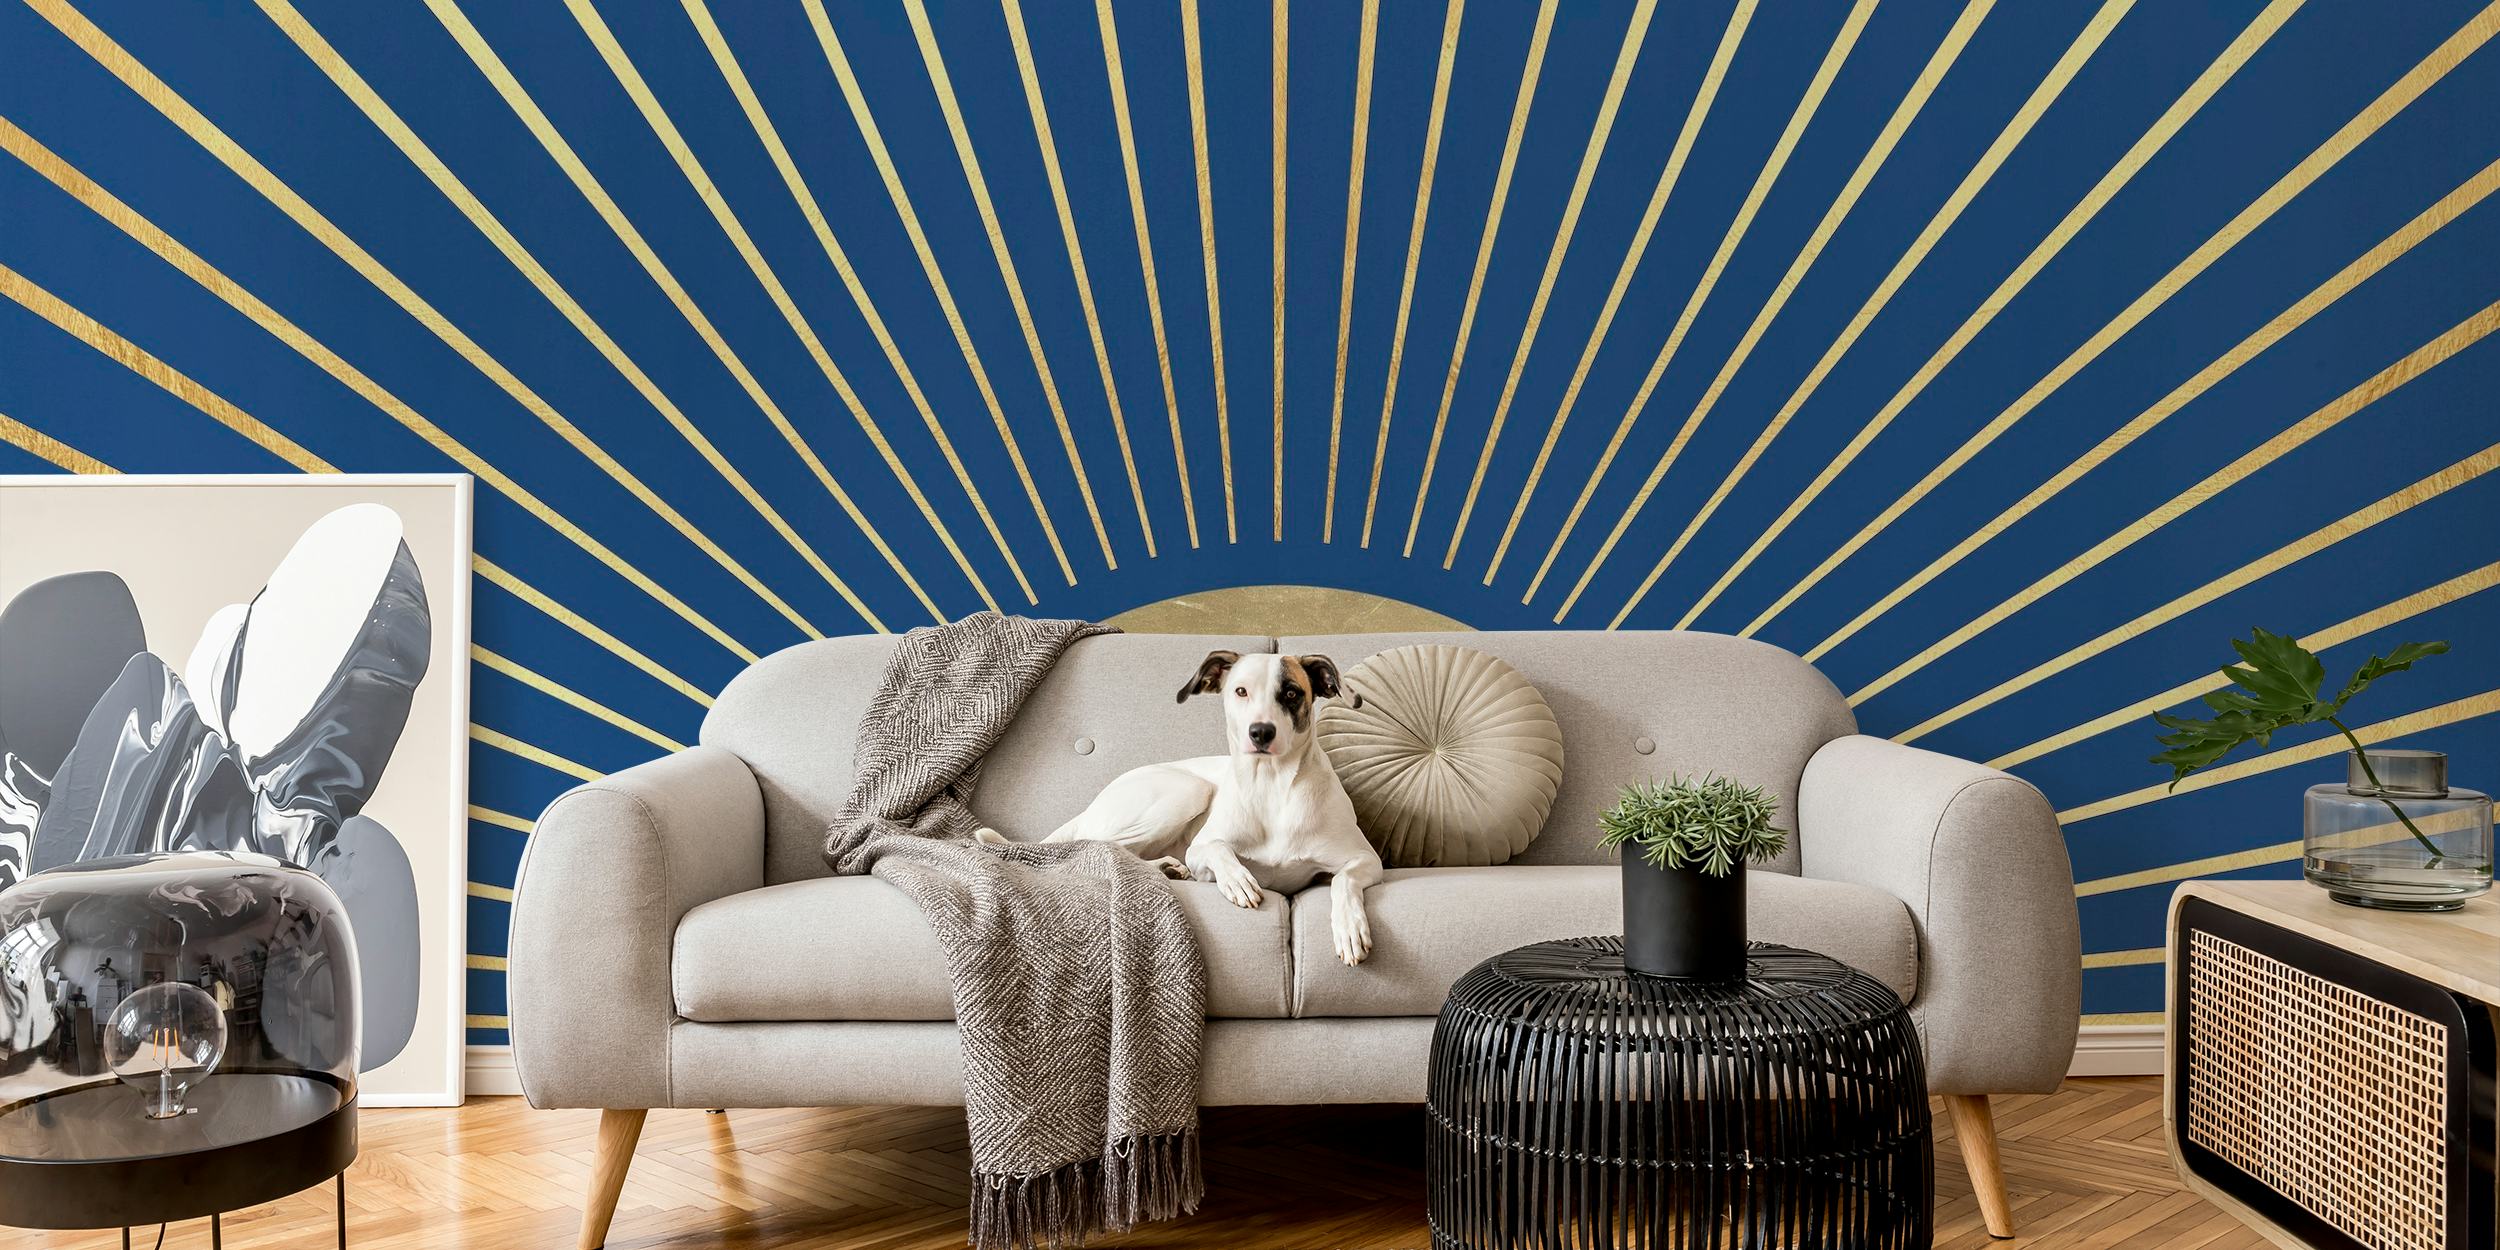 Taiteellinen esitys auringonsäteiden seinämaalauksesta radiaalisilla viivoilla syvän sinisellä taustalla